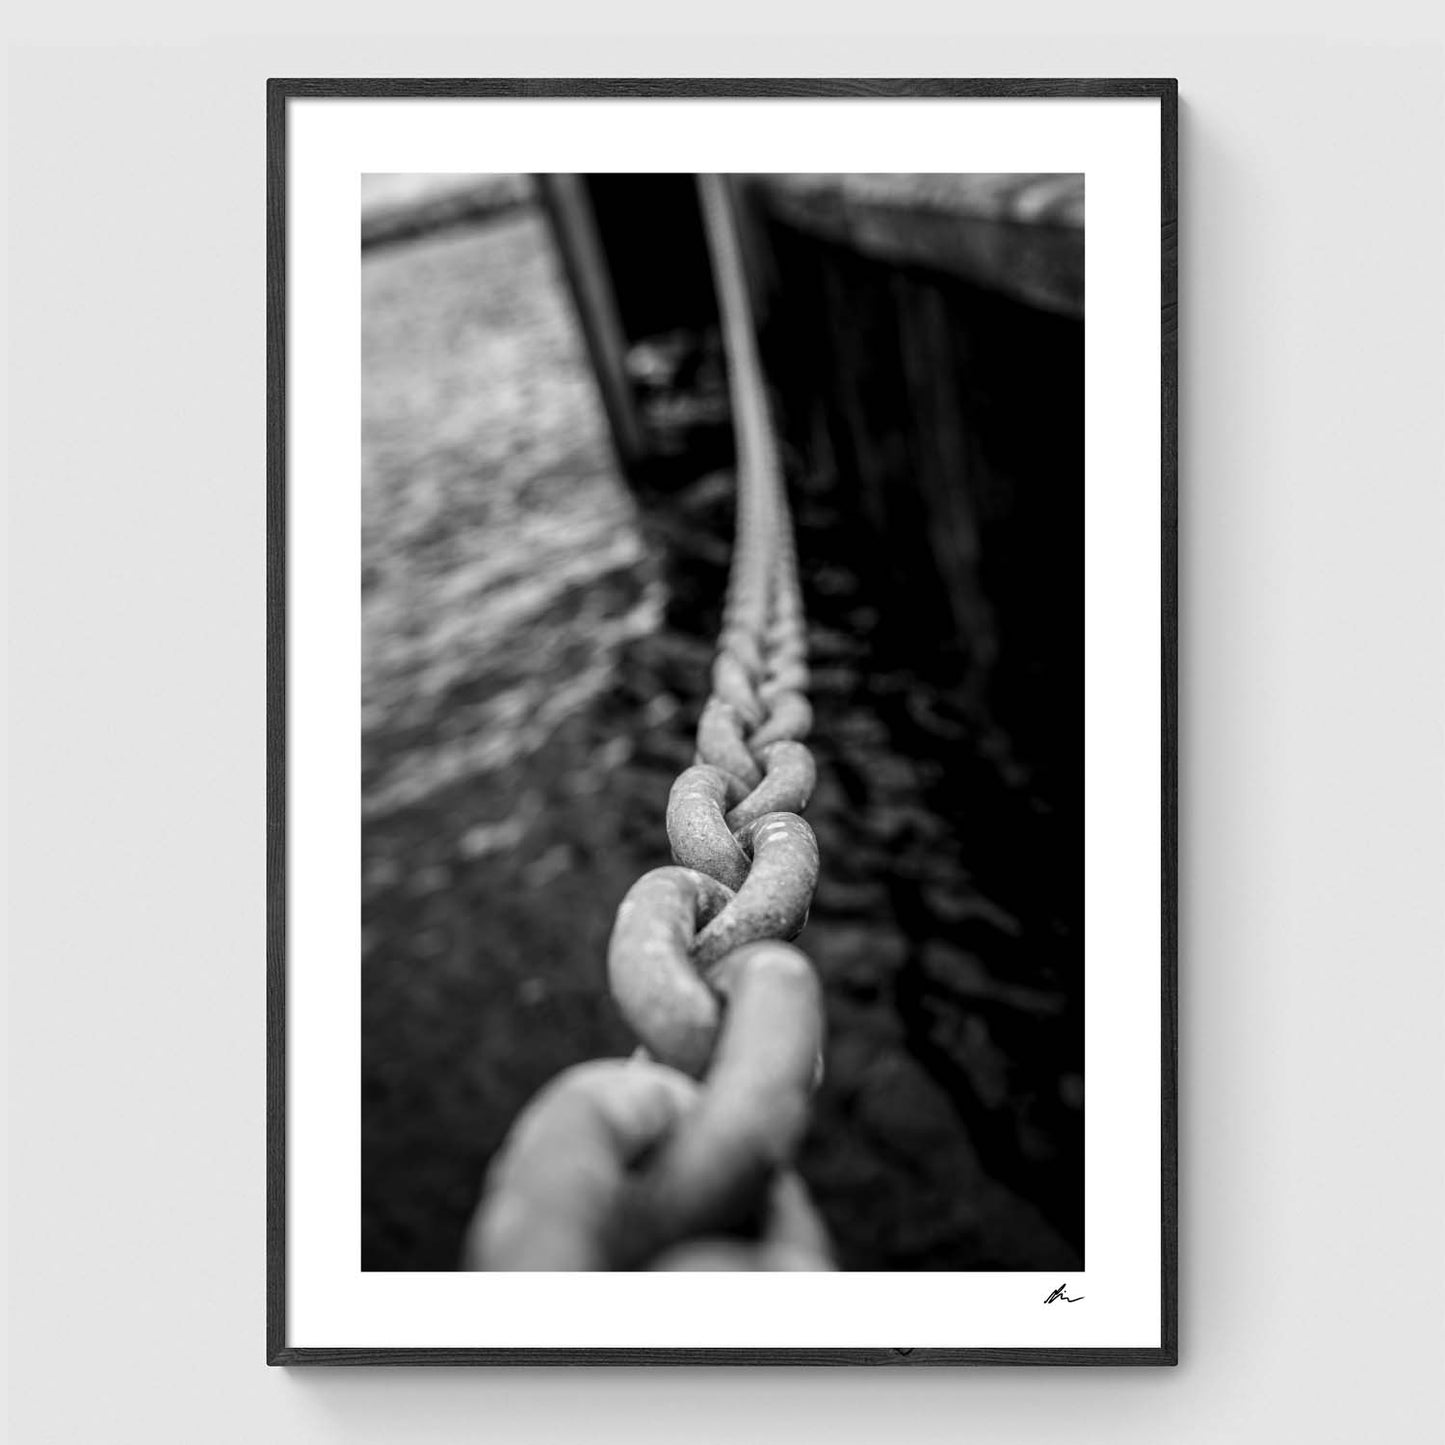 Anchor Chain